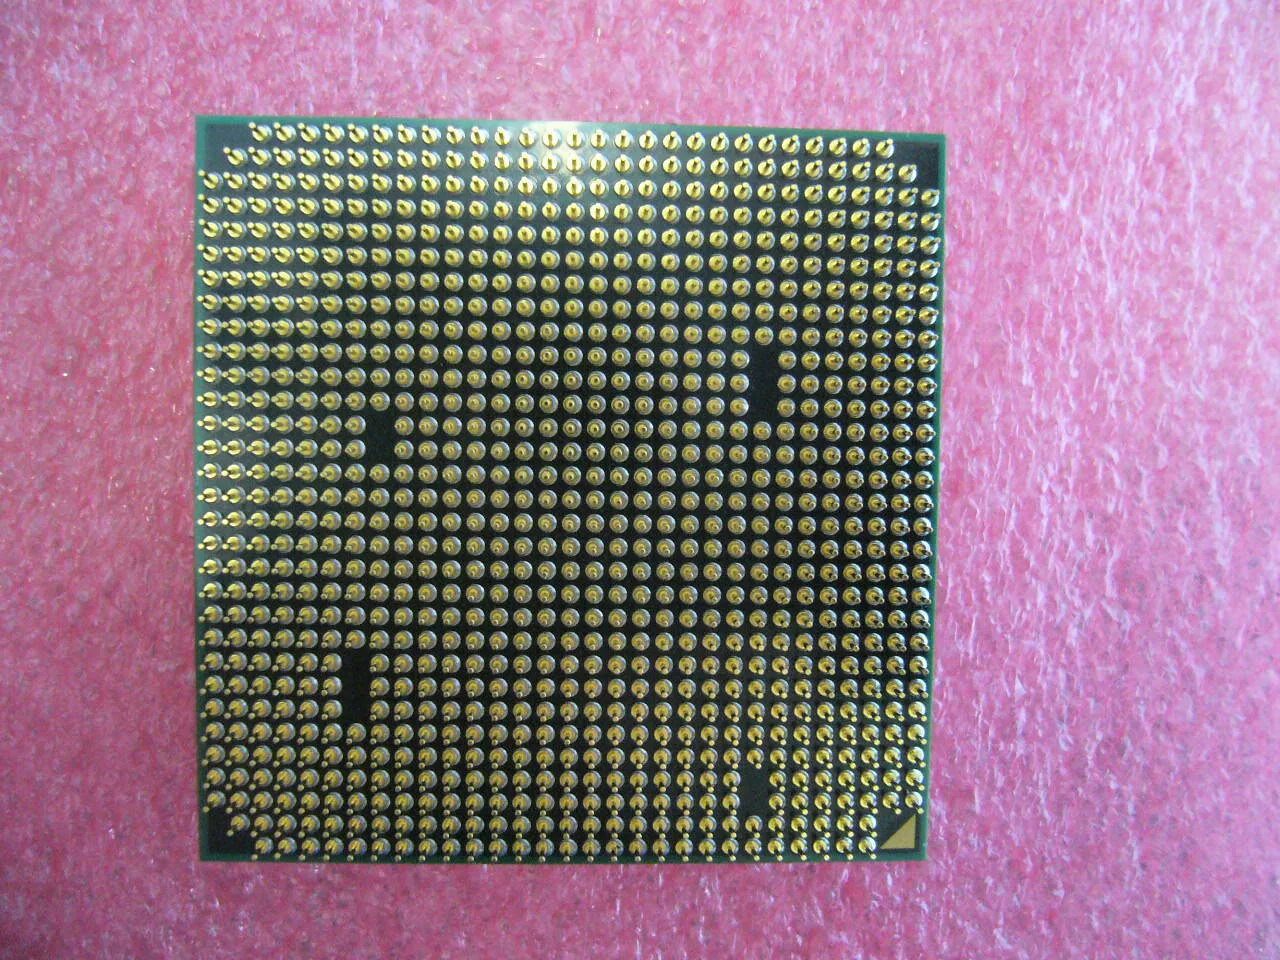 Athlon II 425 x3 am3. Athlon x2 250 сокет. AMD Athlon II Socket am3. AMD Athlon II x2 250 am3, 2 x 3000 МГЦ.